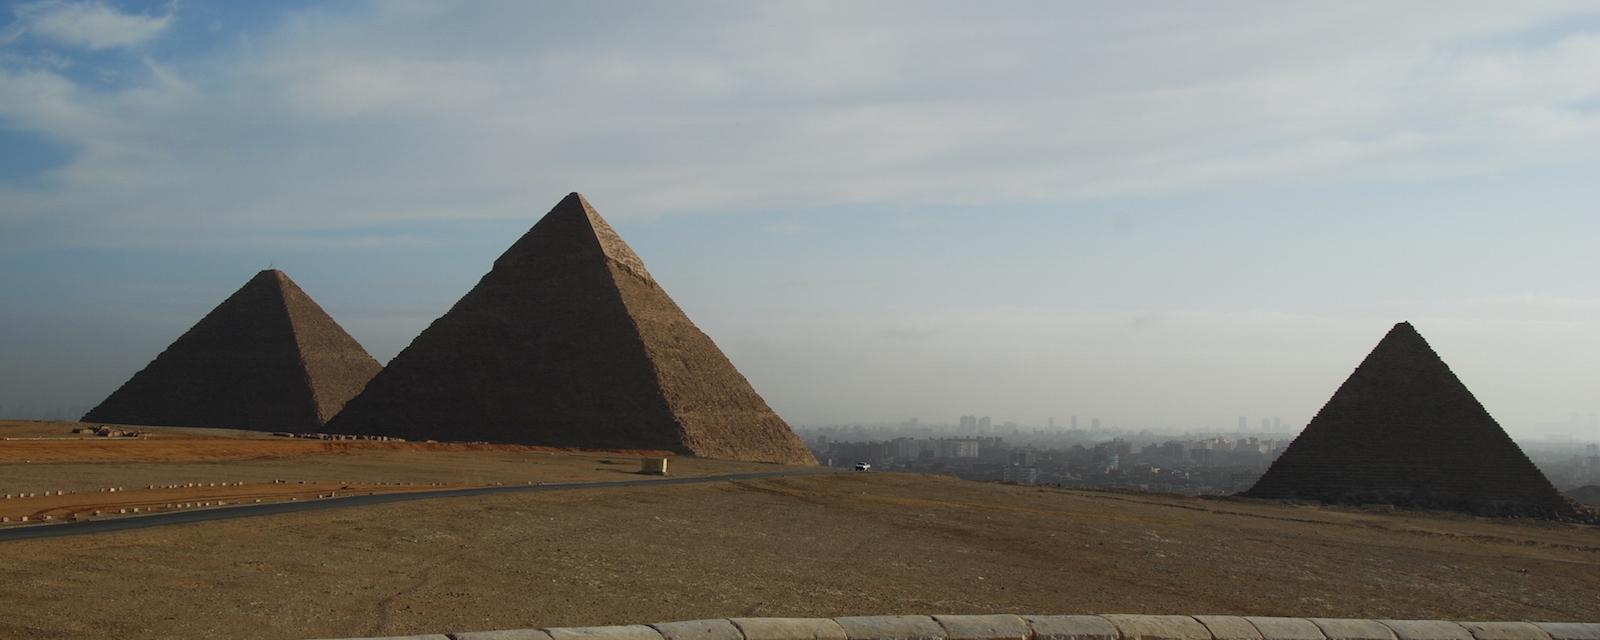 Egitto: Piramidi di Giza